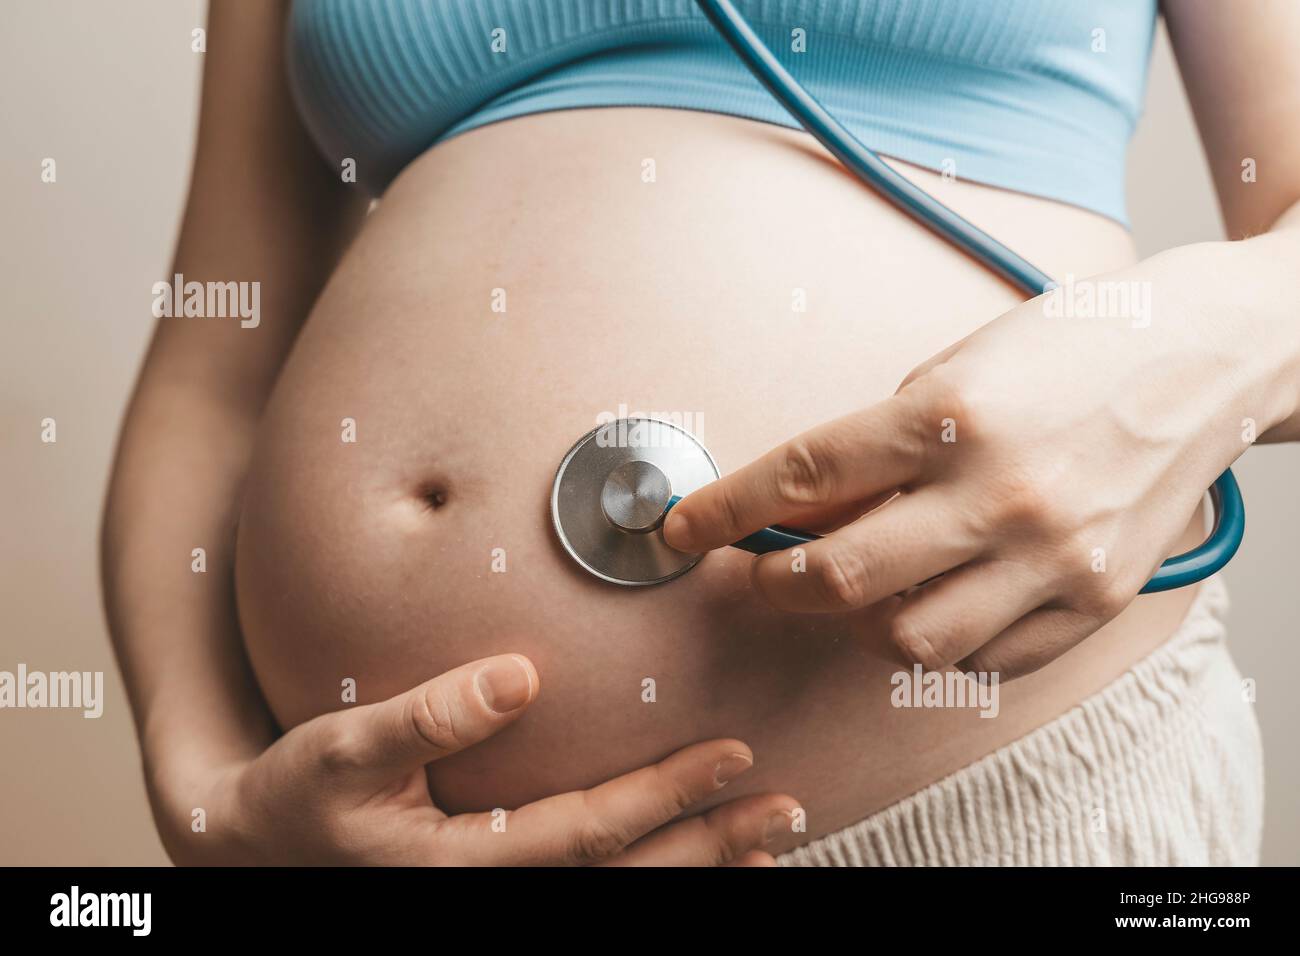 Doppler foetal Fetascope EN STOCK 